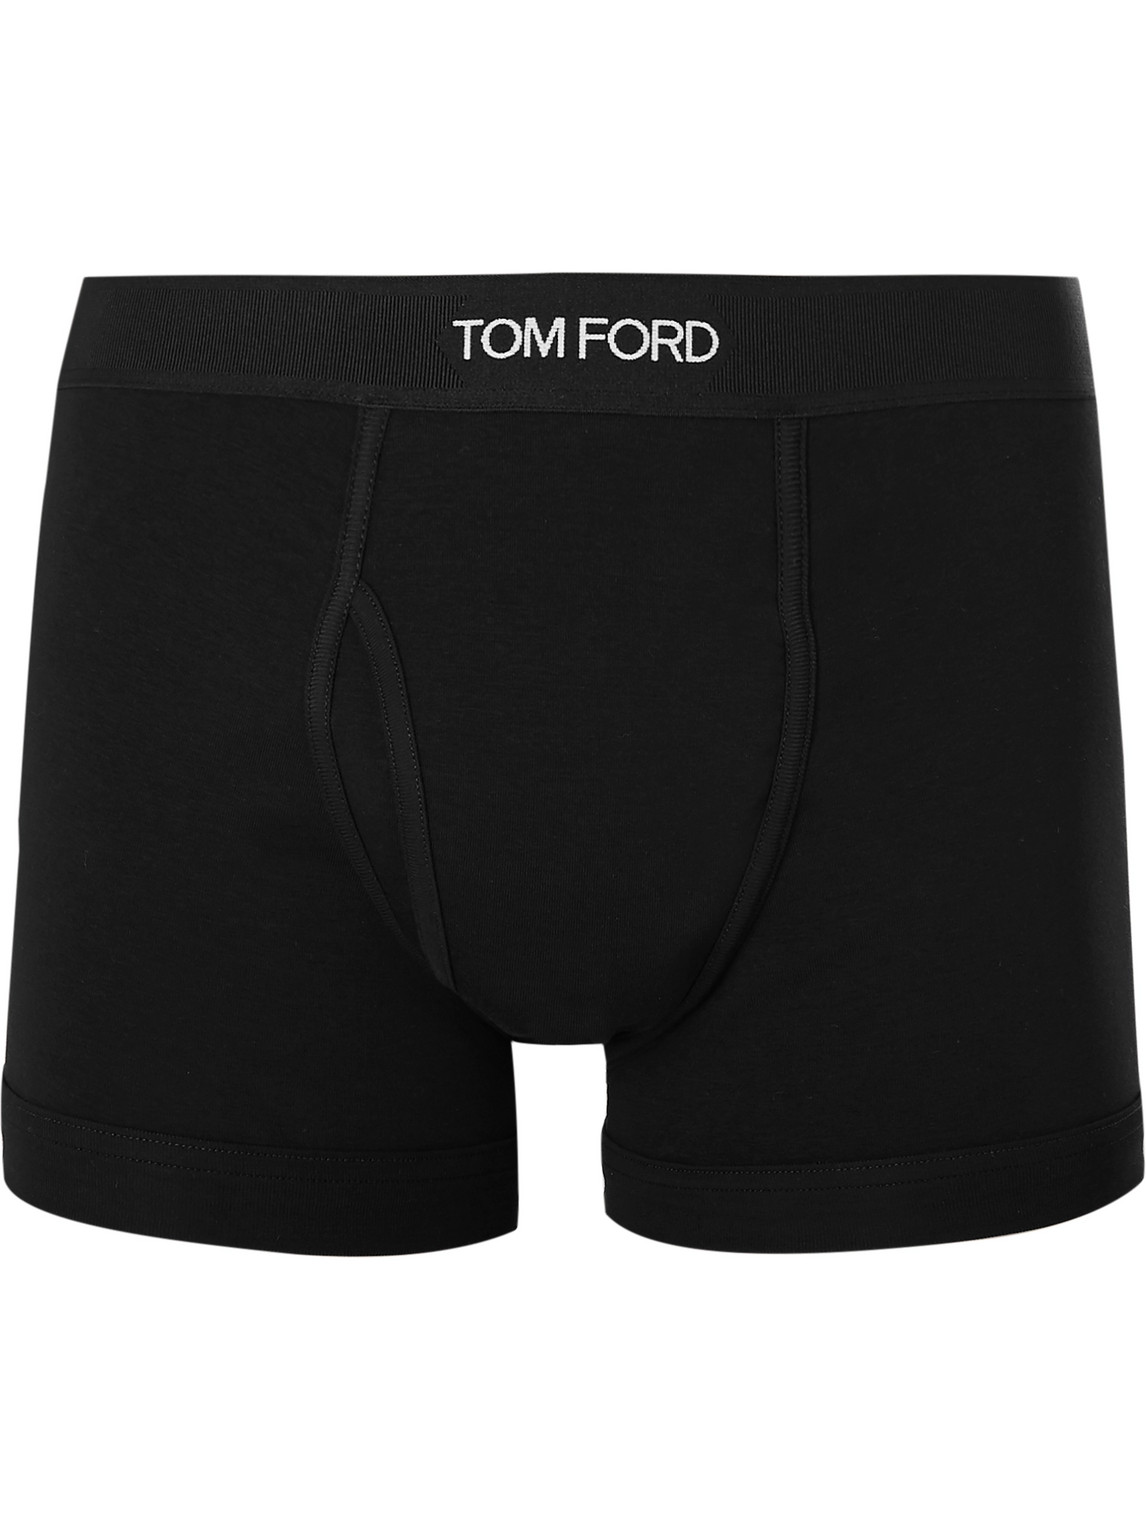 TOM FORD - Stretch-Cotton Boxer Briefs - Men - Black - XL von TOM FORD